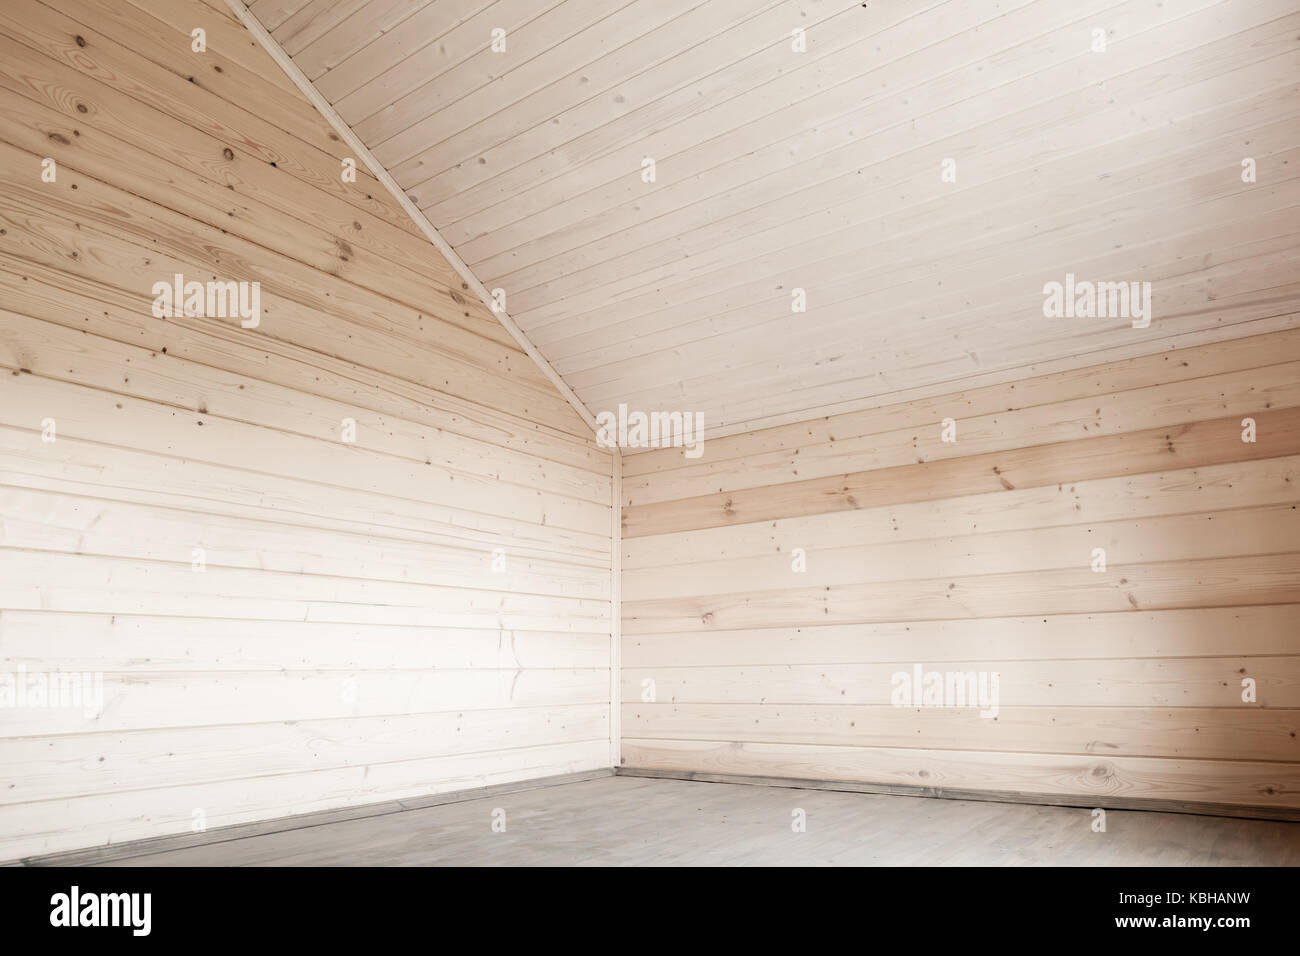 Leeren Raum innen, Holz- Wände und Boden Unter weißen Decke Stockfoto